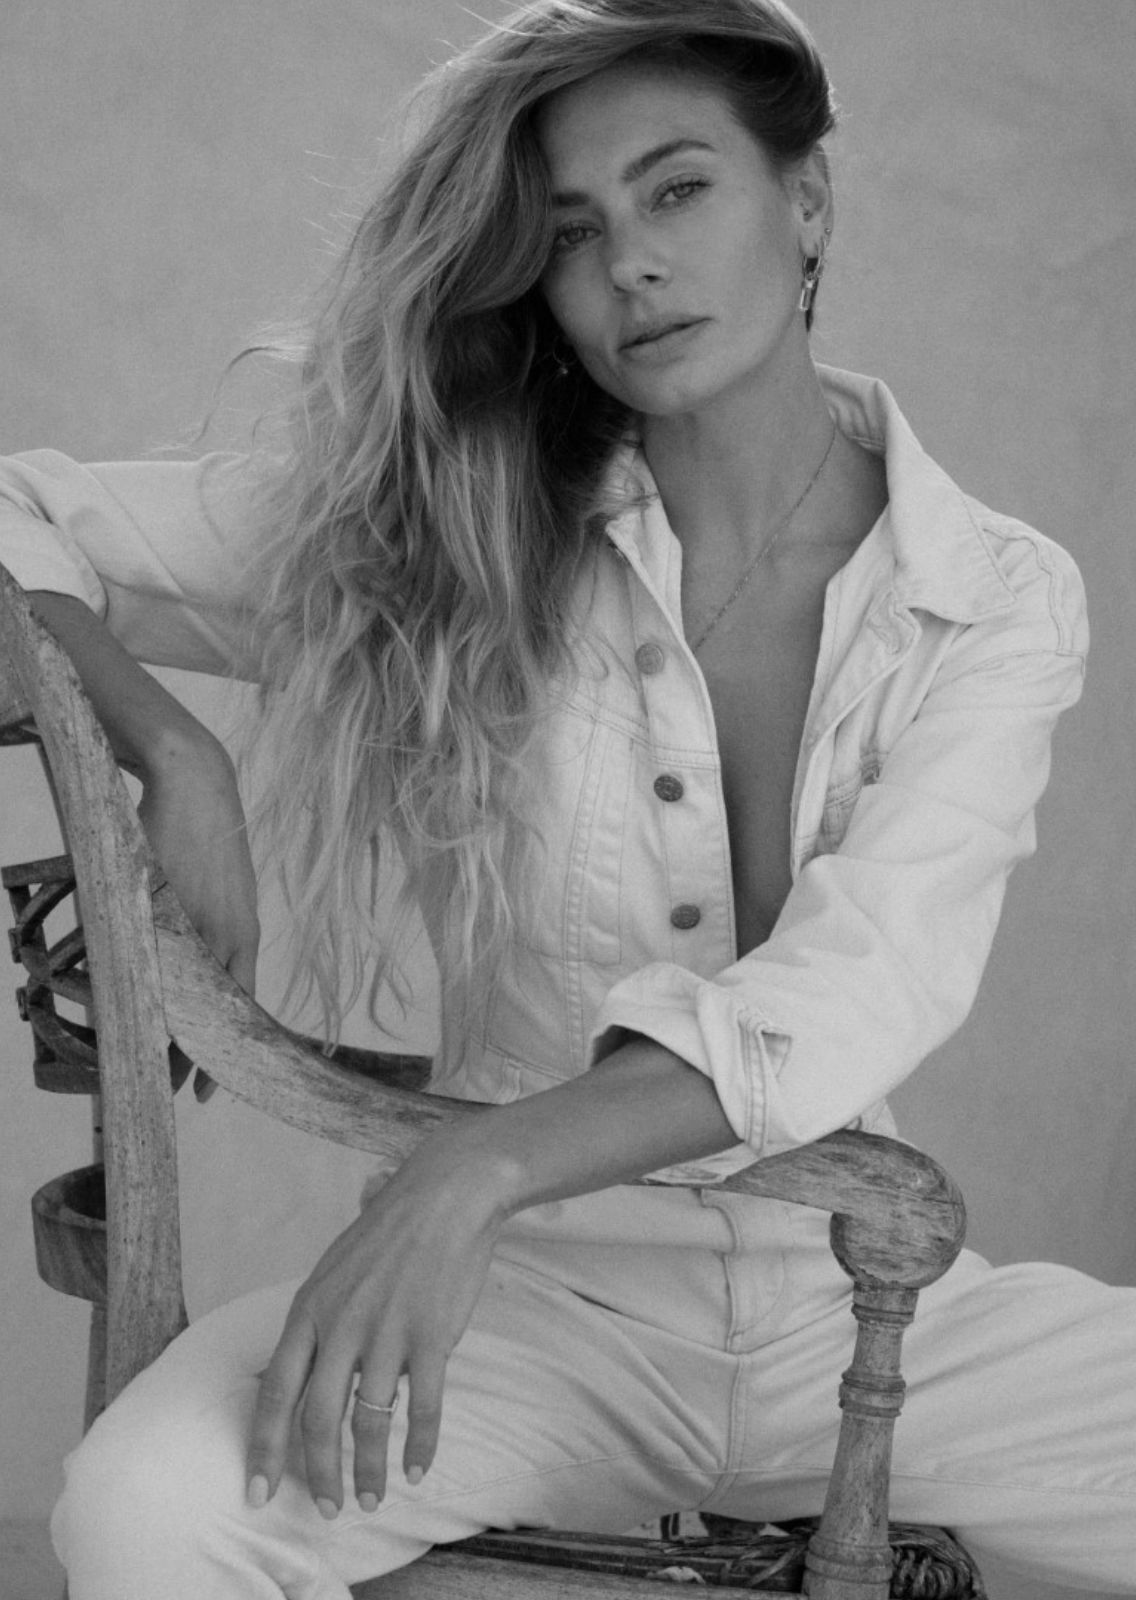 MALIN SVENSSON. Carmen Duran Model Agency.